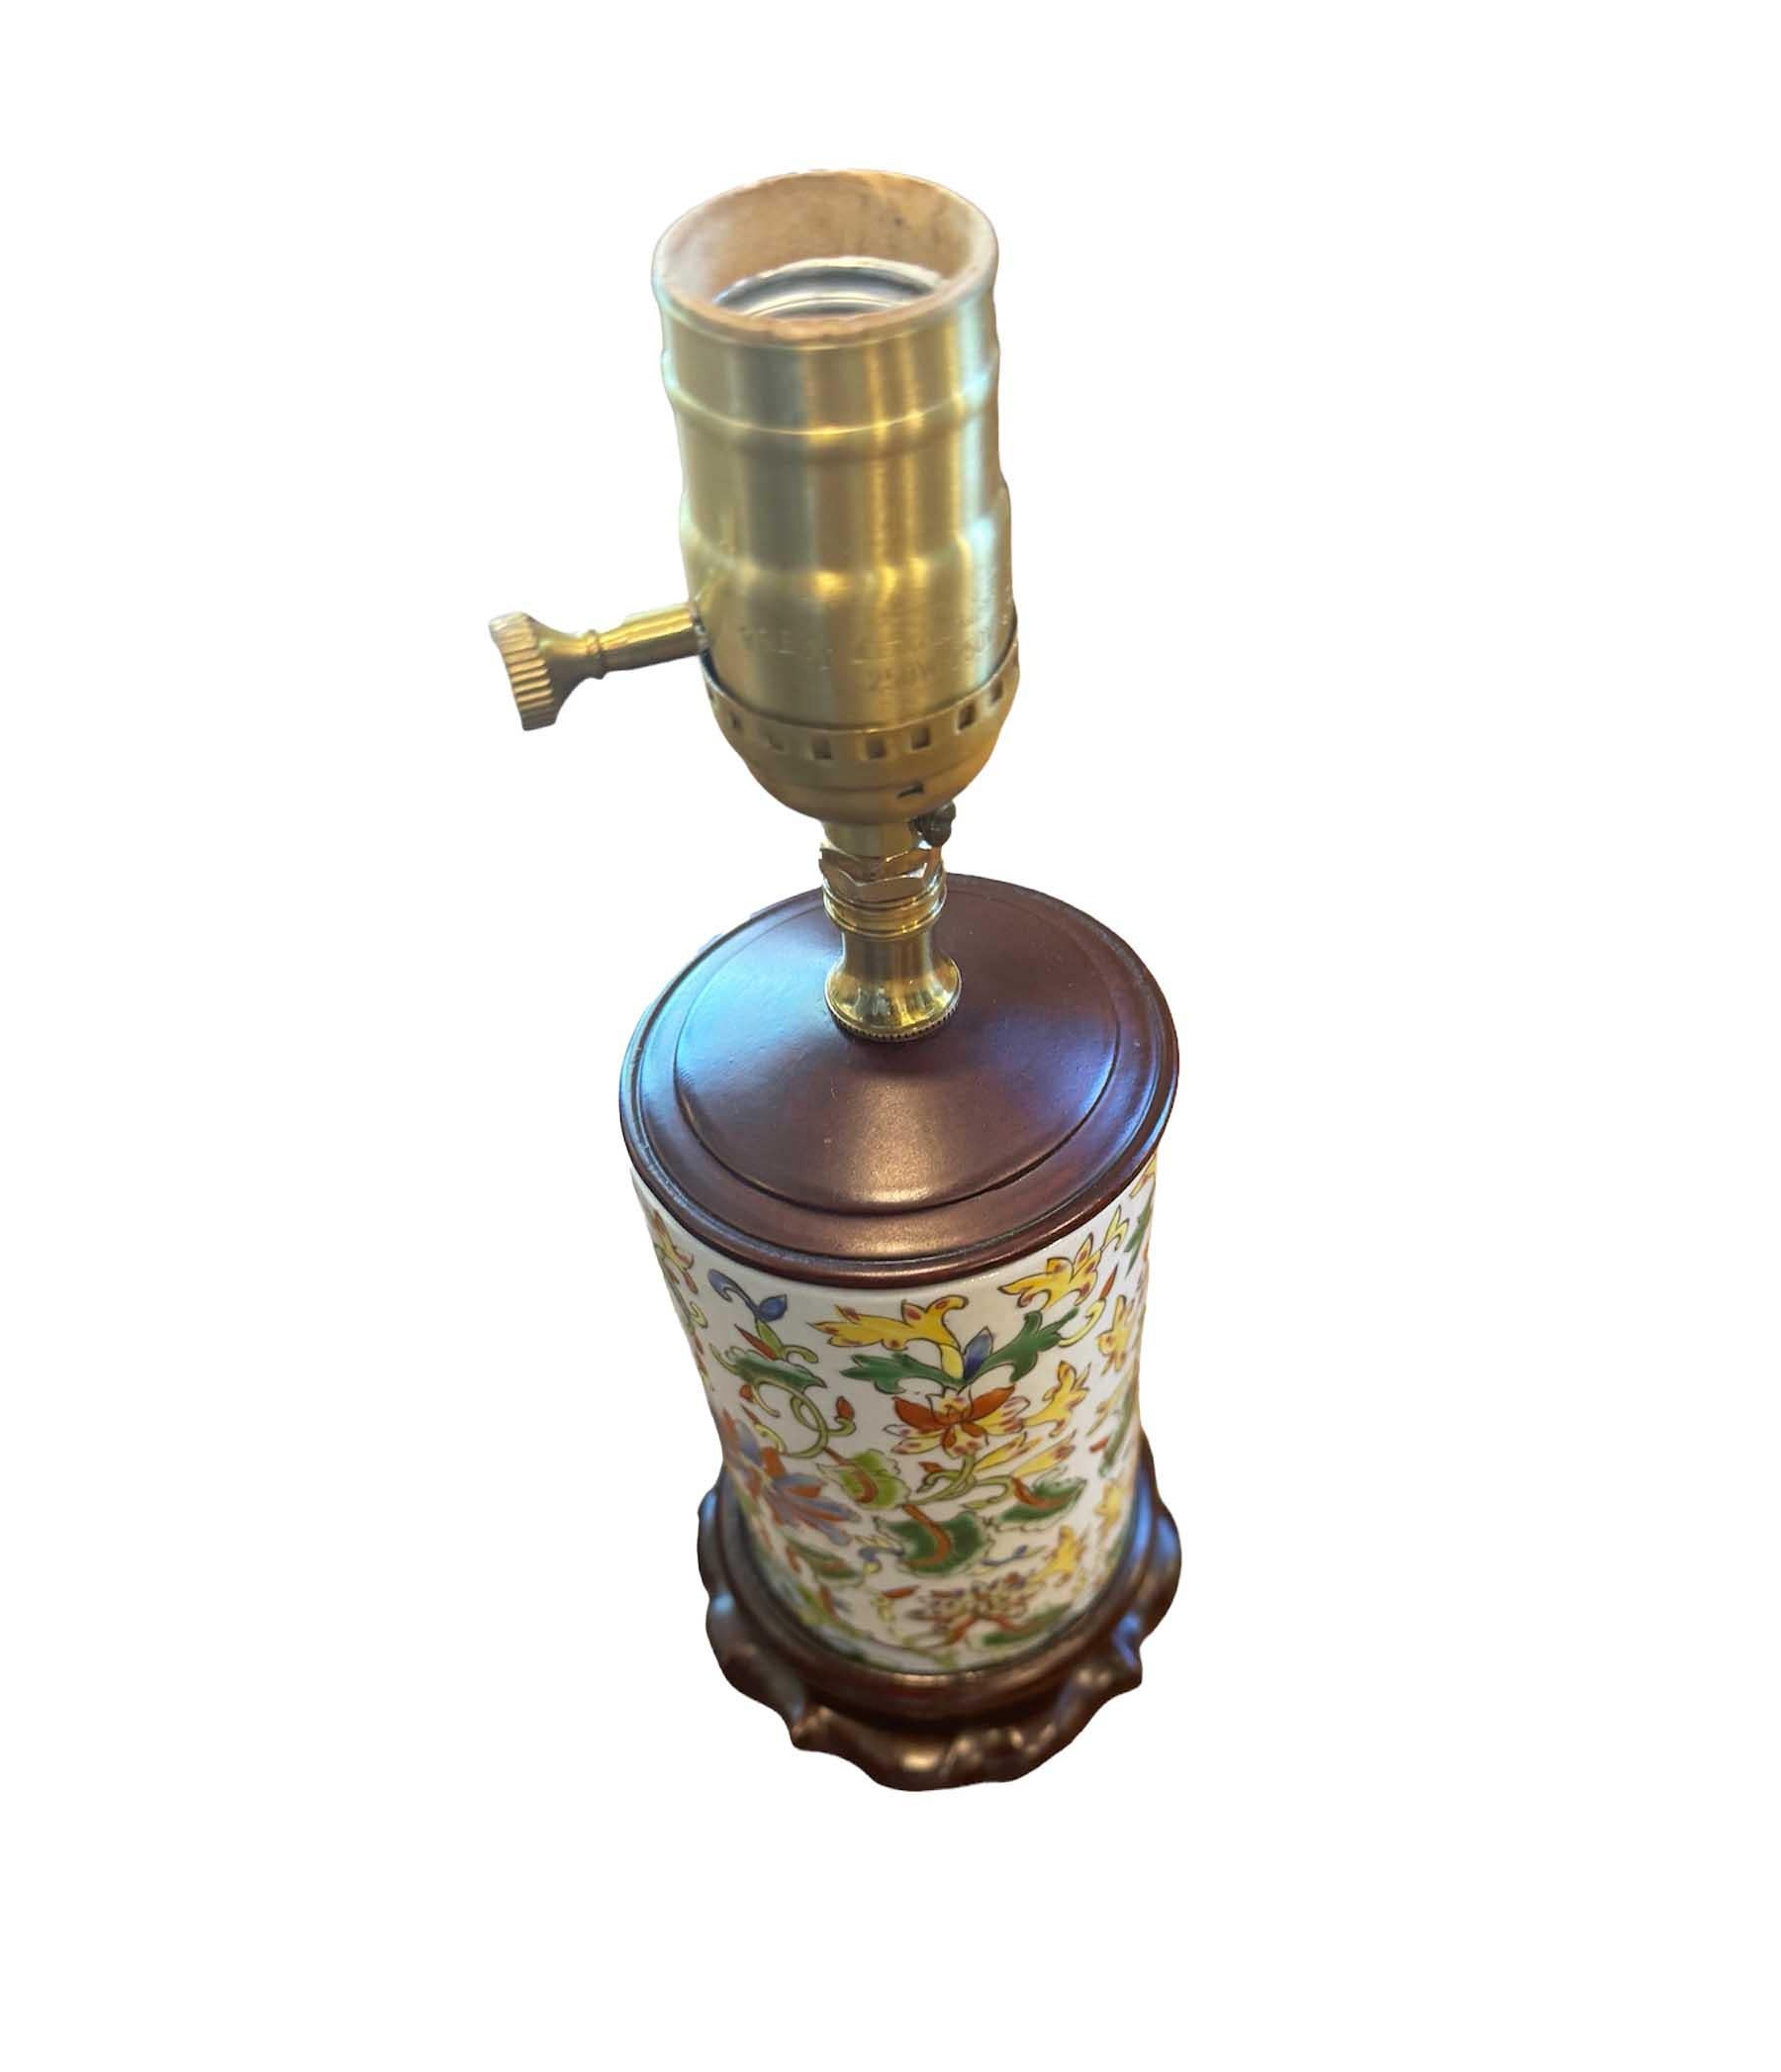 Embrassez l'attrait de l'histoire et de la culture avec cette remarquable lampe ancienne à vase cylindrique de la famille rose chinoise. Réalisée avec un art exquis, cette pièce présente des motifs complexes dans des couleurs vives typiques du style